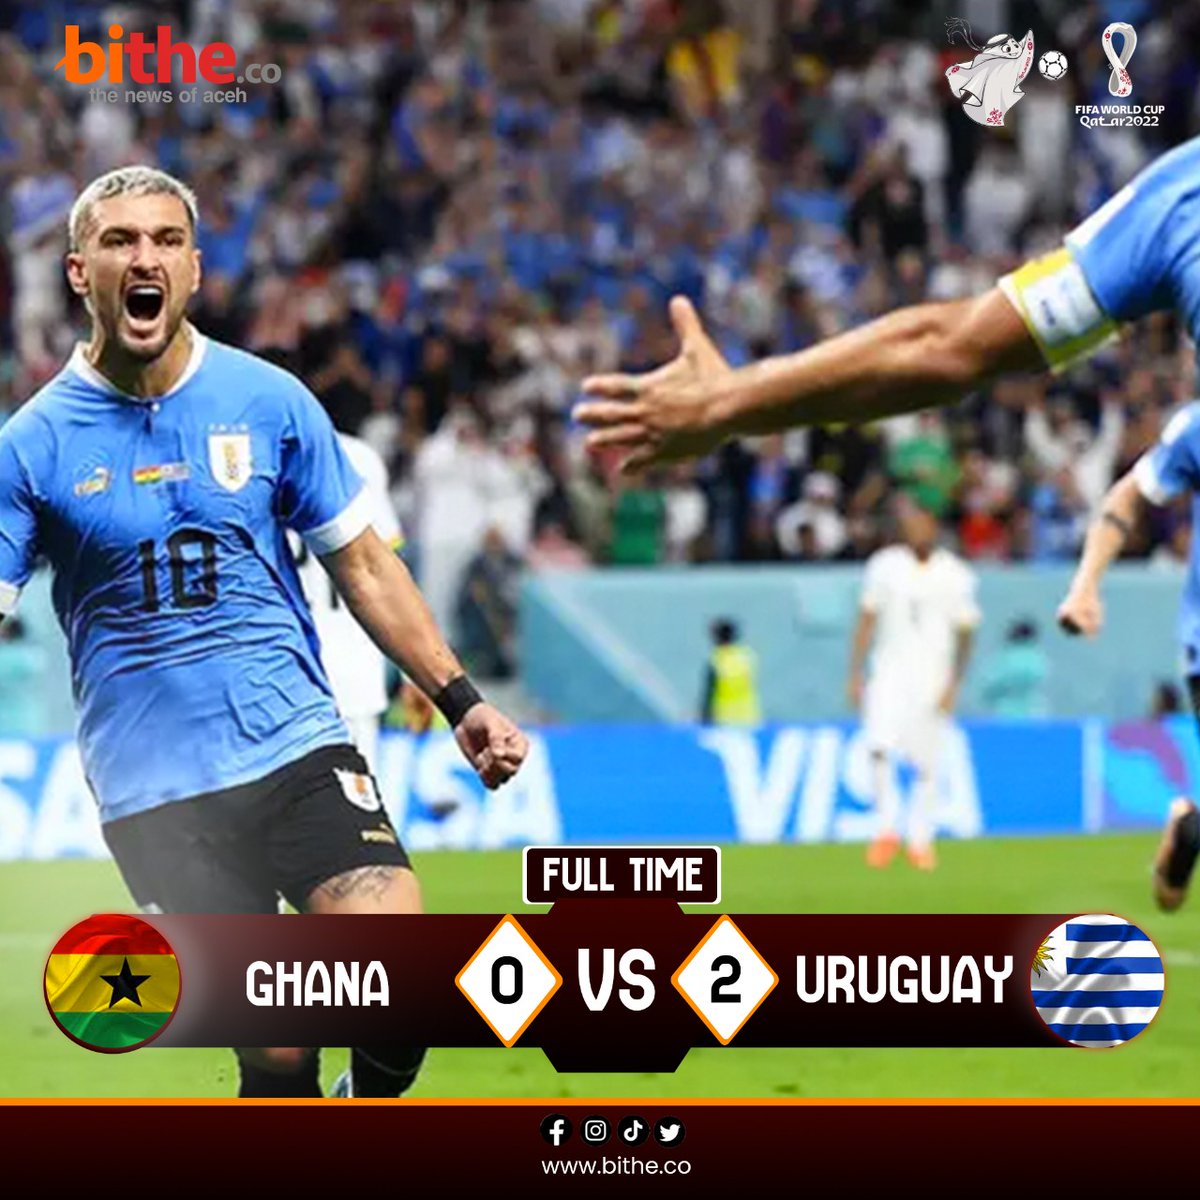 TABITHE OLAHRAGA
#PialaDunia2022 #PialaDuniaQatar #Uruguay #ghanavsuruguay